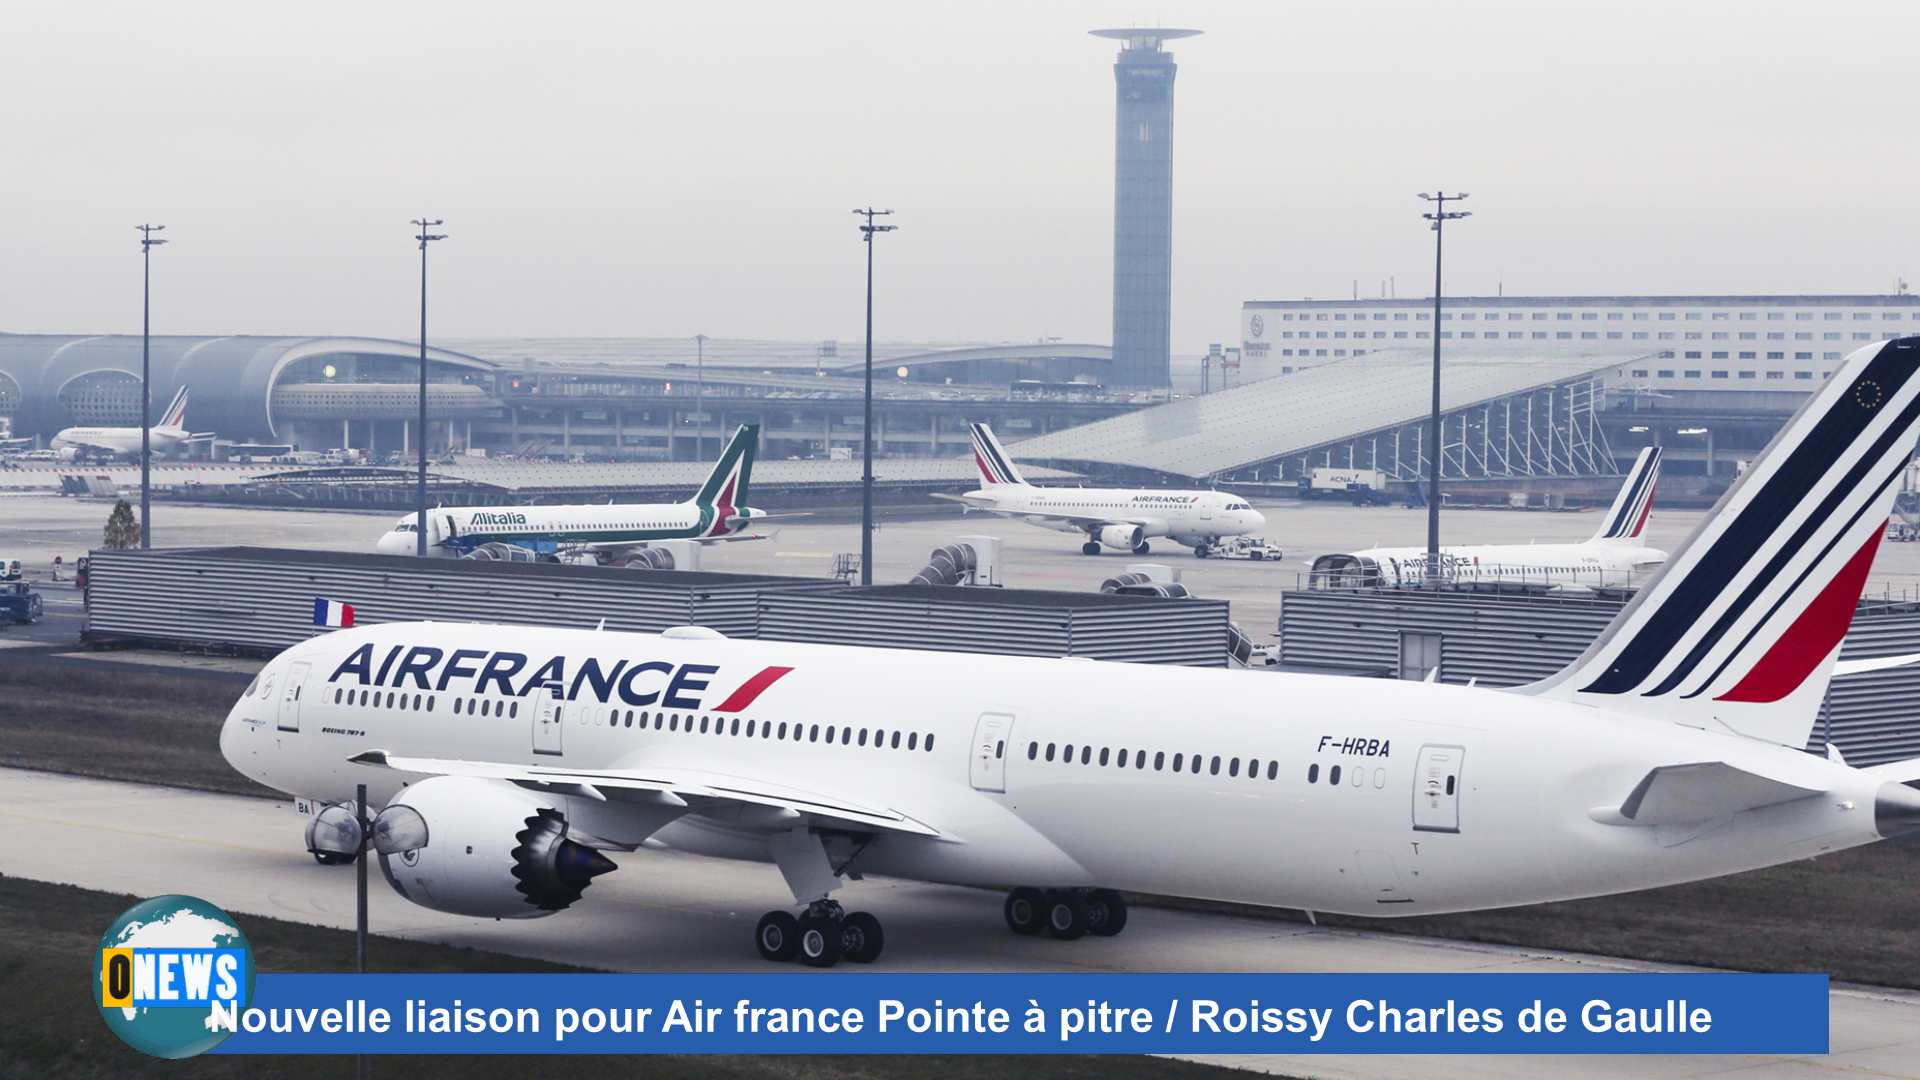 [Vidéo] Hexagone. Nouvelle liaison pour Air france Pointe à pitre / Roissy Charles de Gaulle.